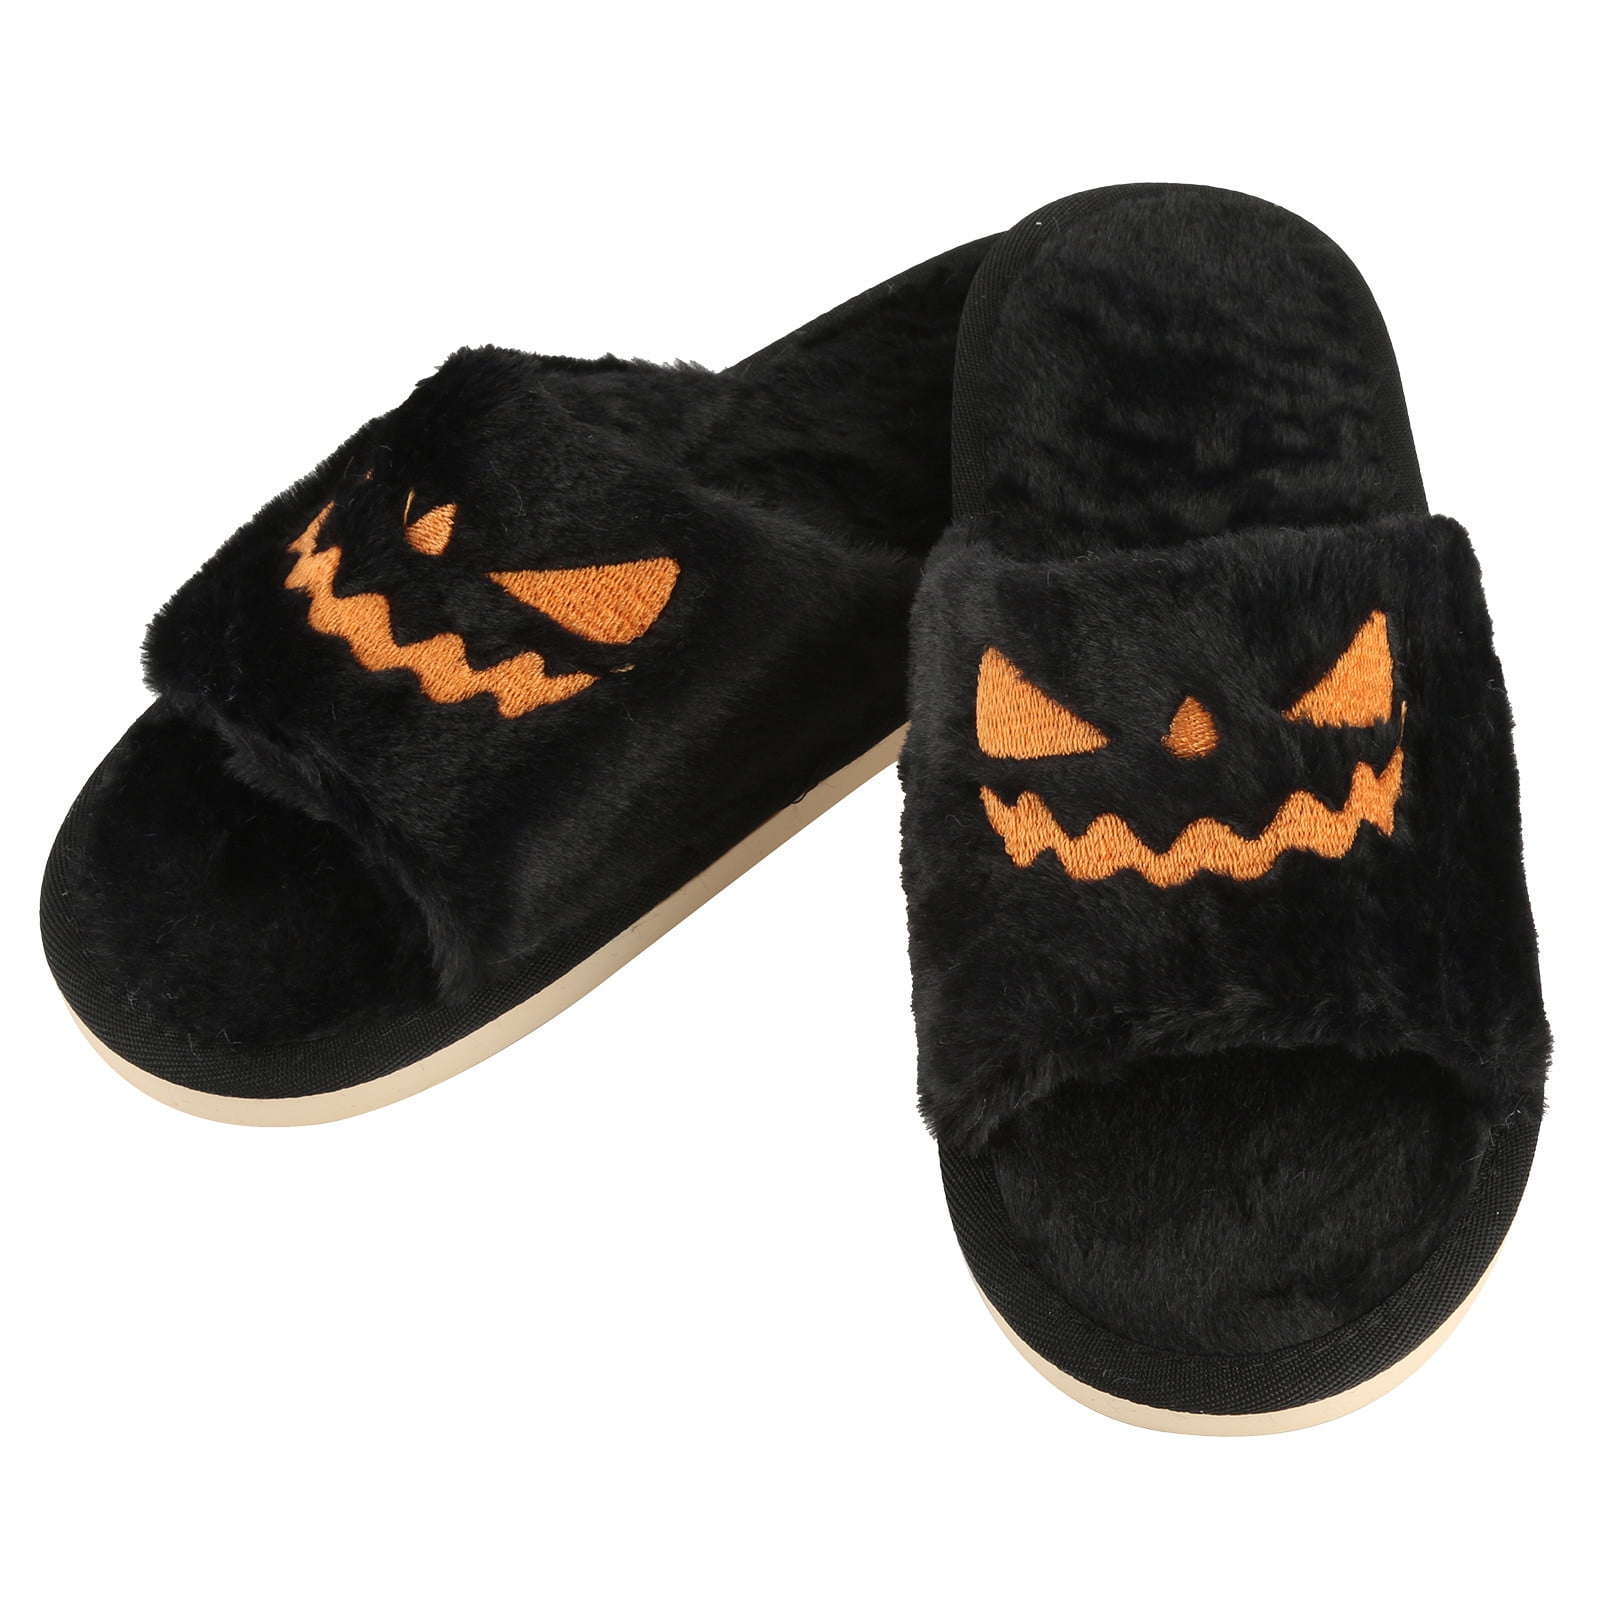 purcolt Halloween Pumpkin Slippers for Women Men;Women's Mens Fall Plush Home Slippers Open Toe Flat Sandals Comfort Cozy House Non-slip Slip-On Floor Slippers for Indoor - Walmart.com